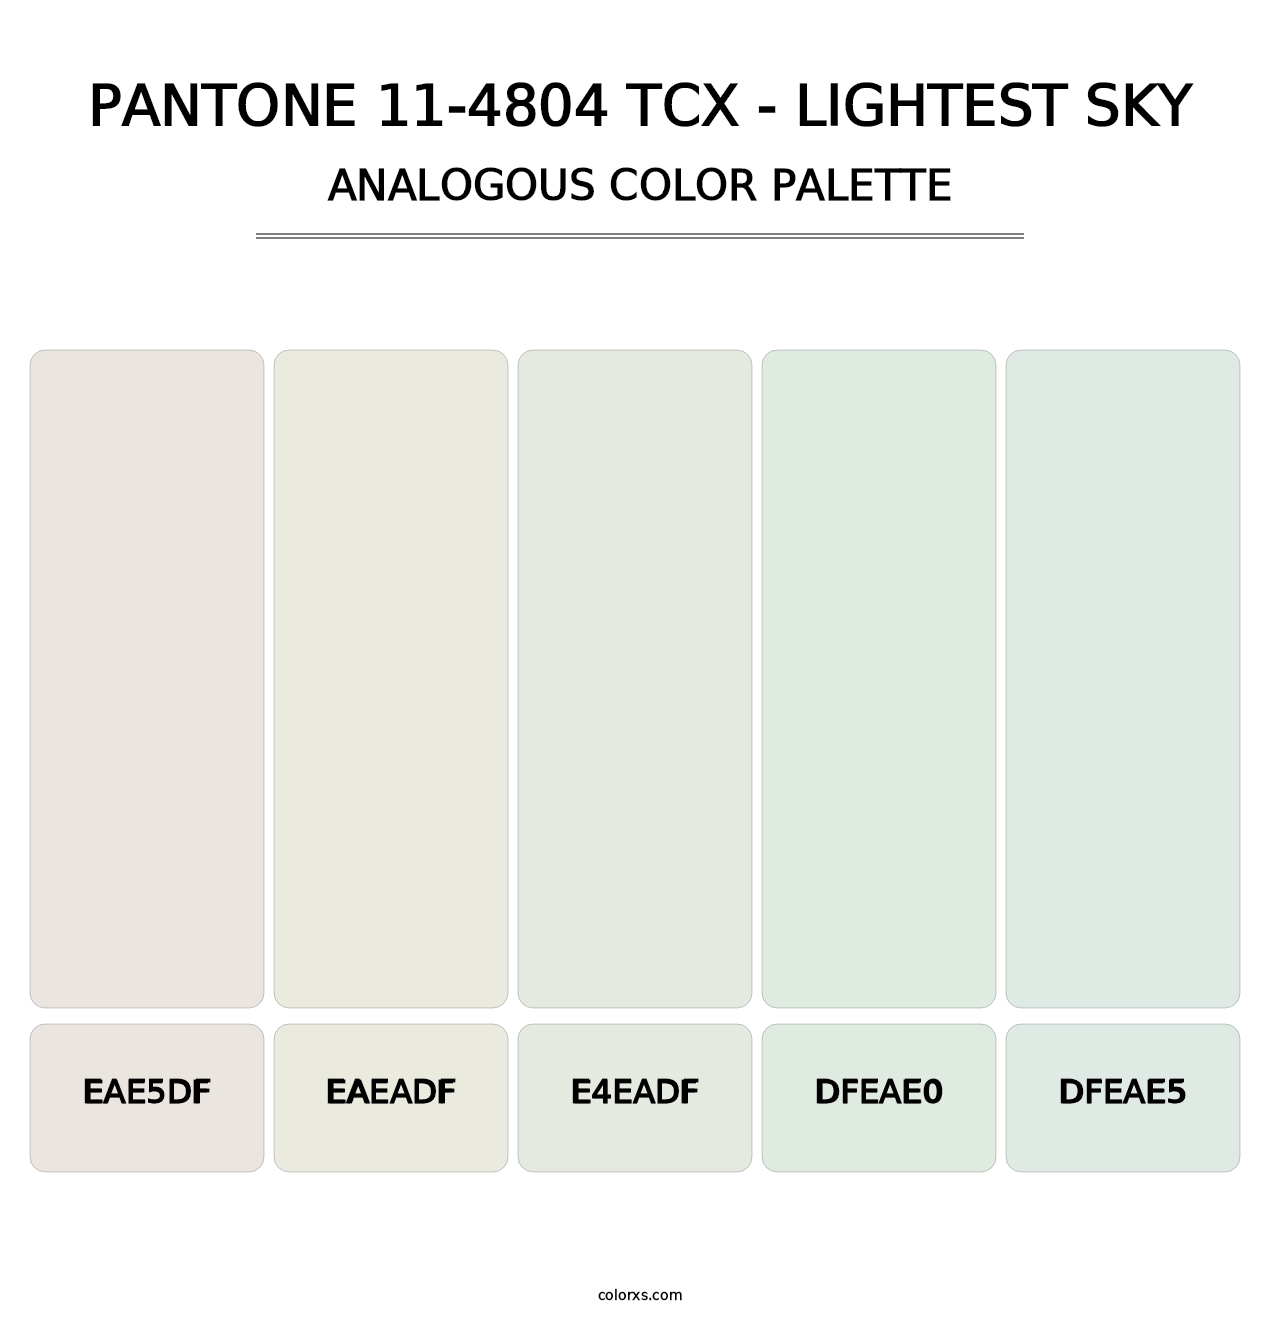 PANTONE 11-4804 TCX - Lightest Sky - Analogous Color Palette